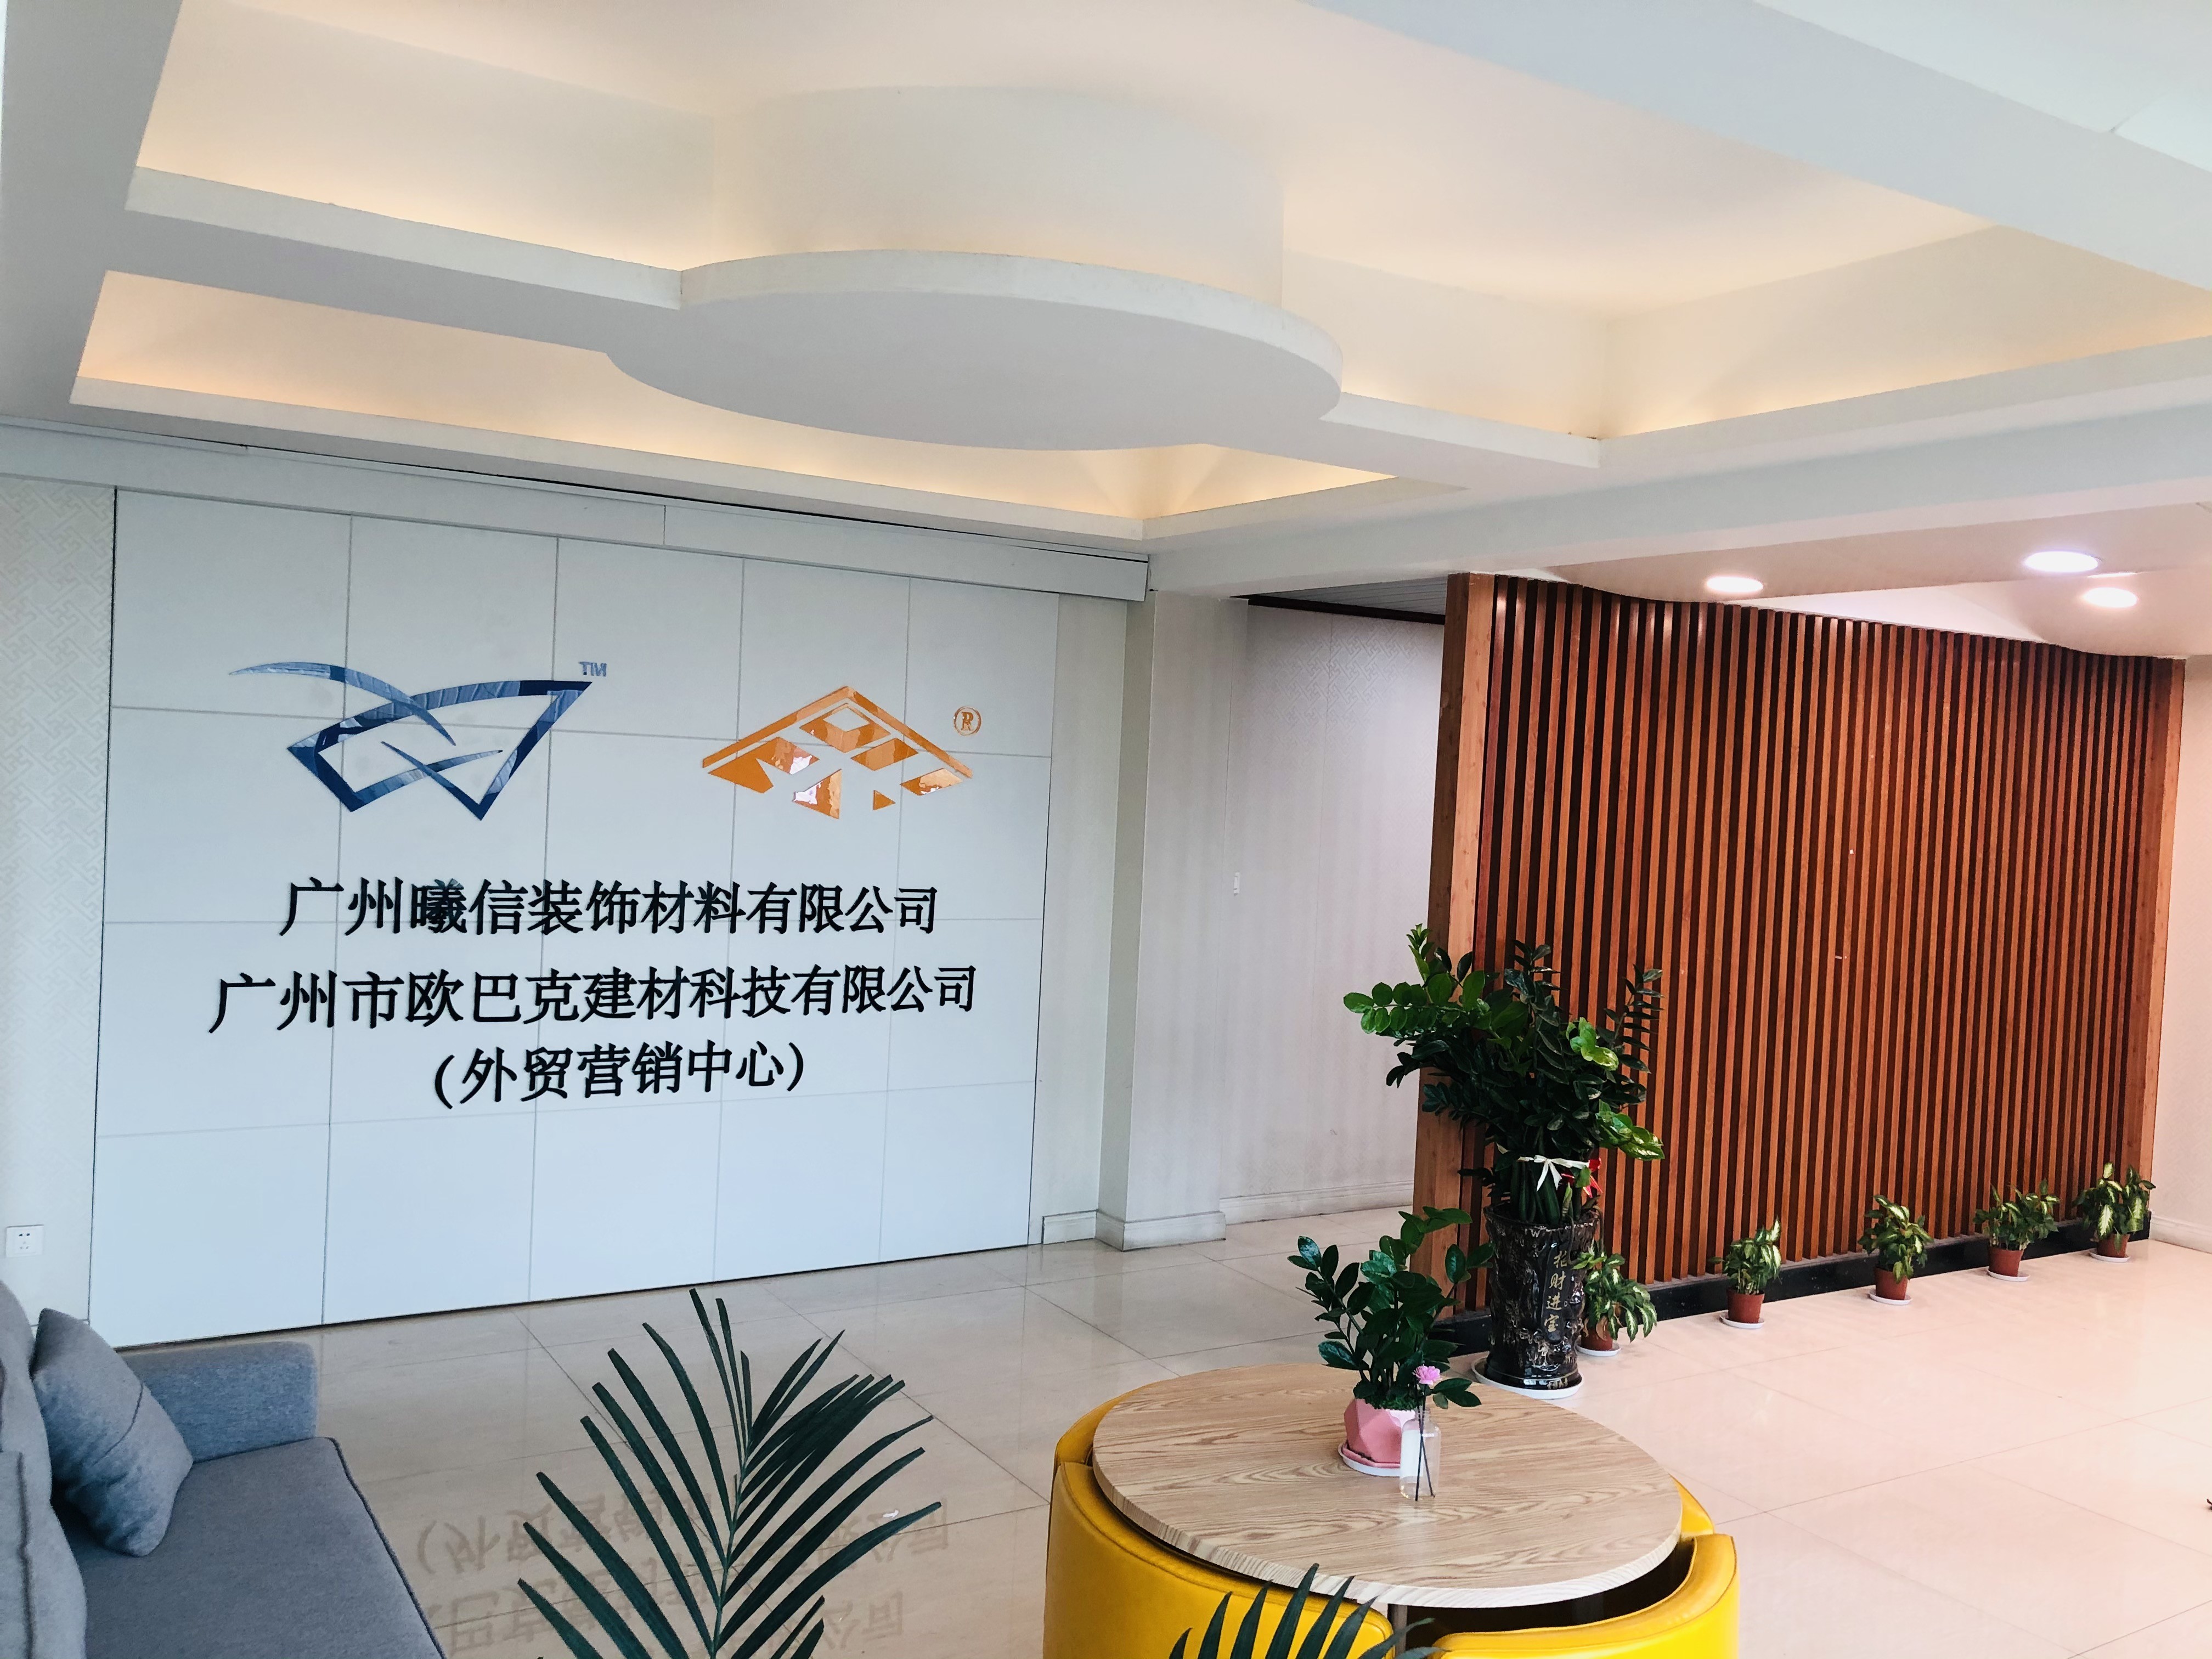 China Guangzhou Season Decoration Materials Co., Ltd. Perfil de la compañía